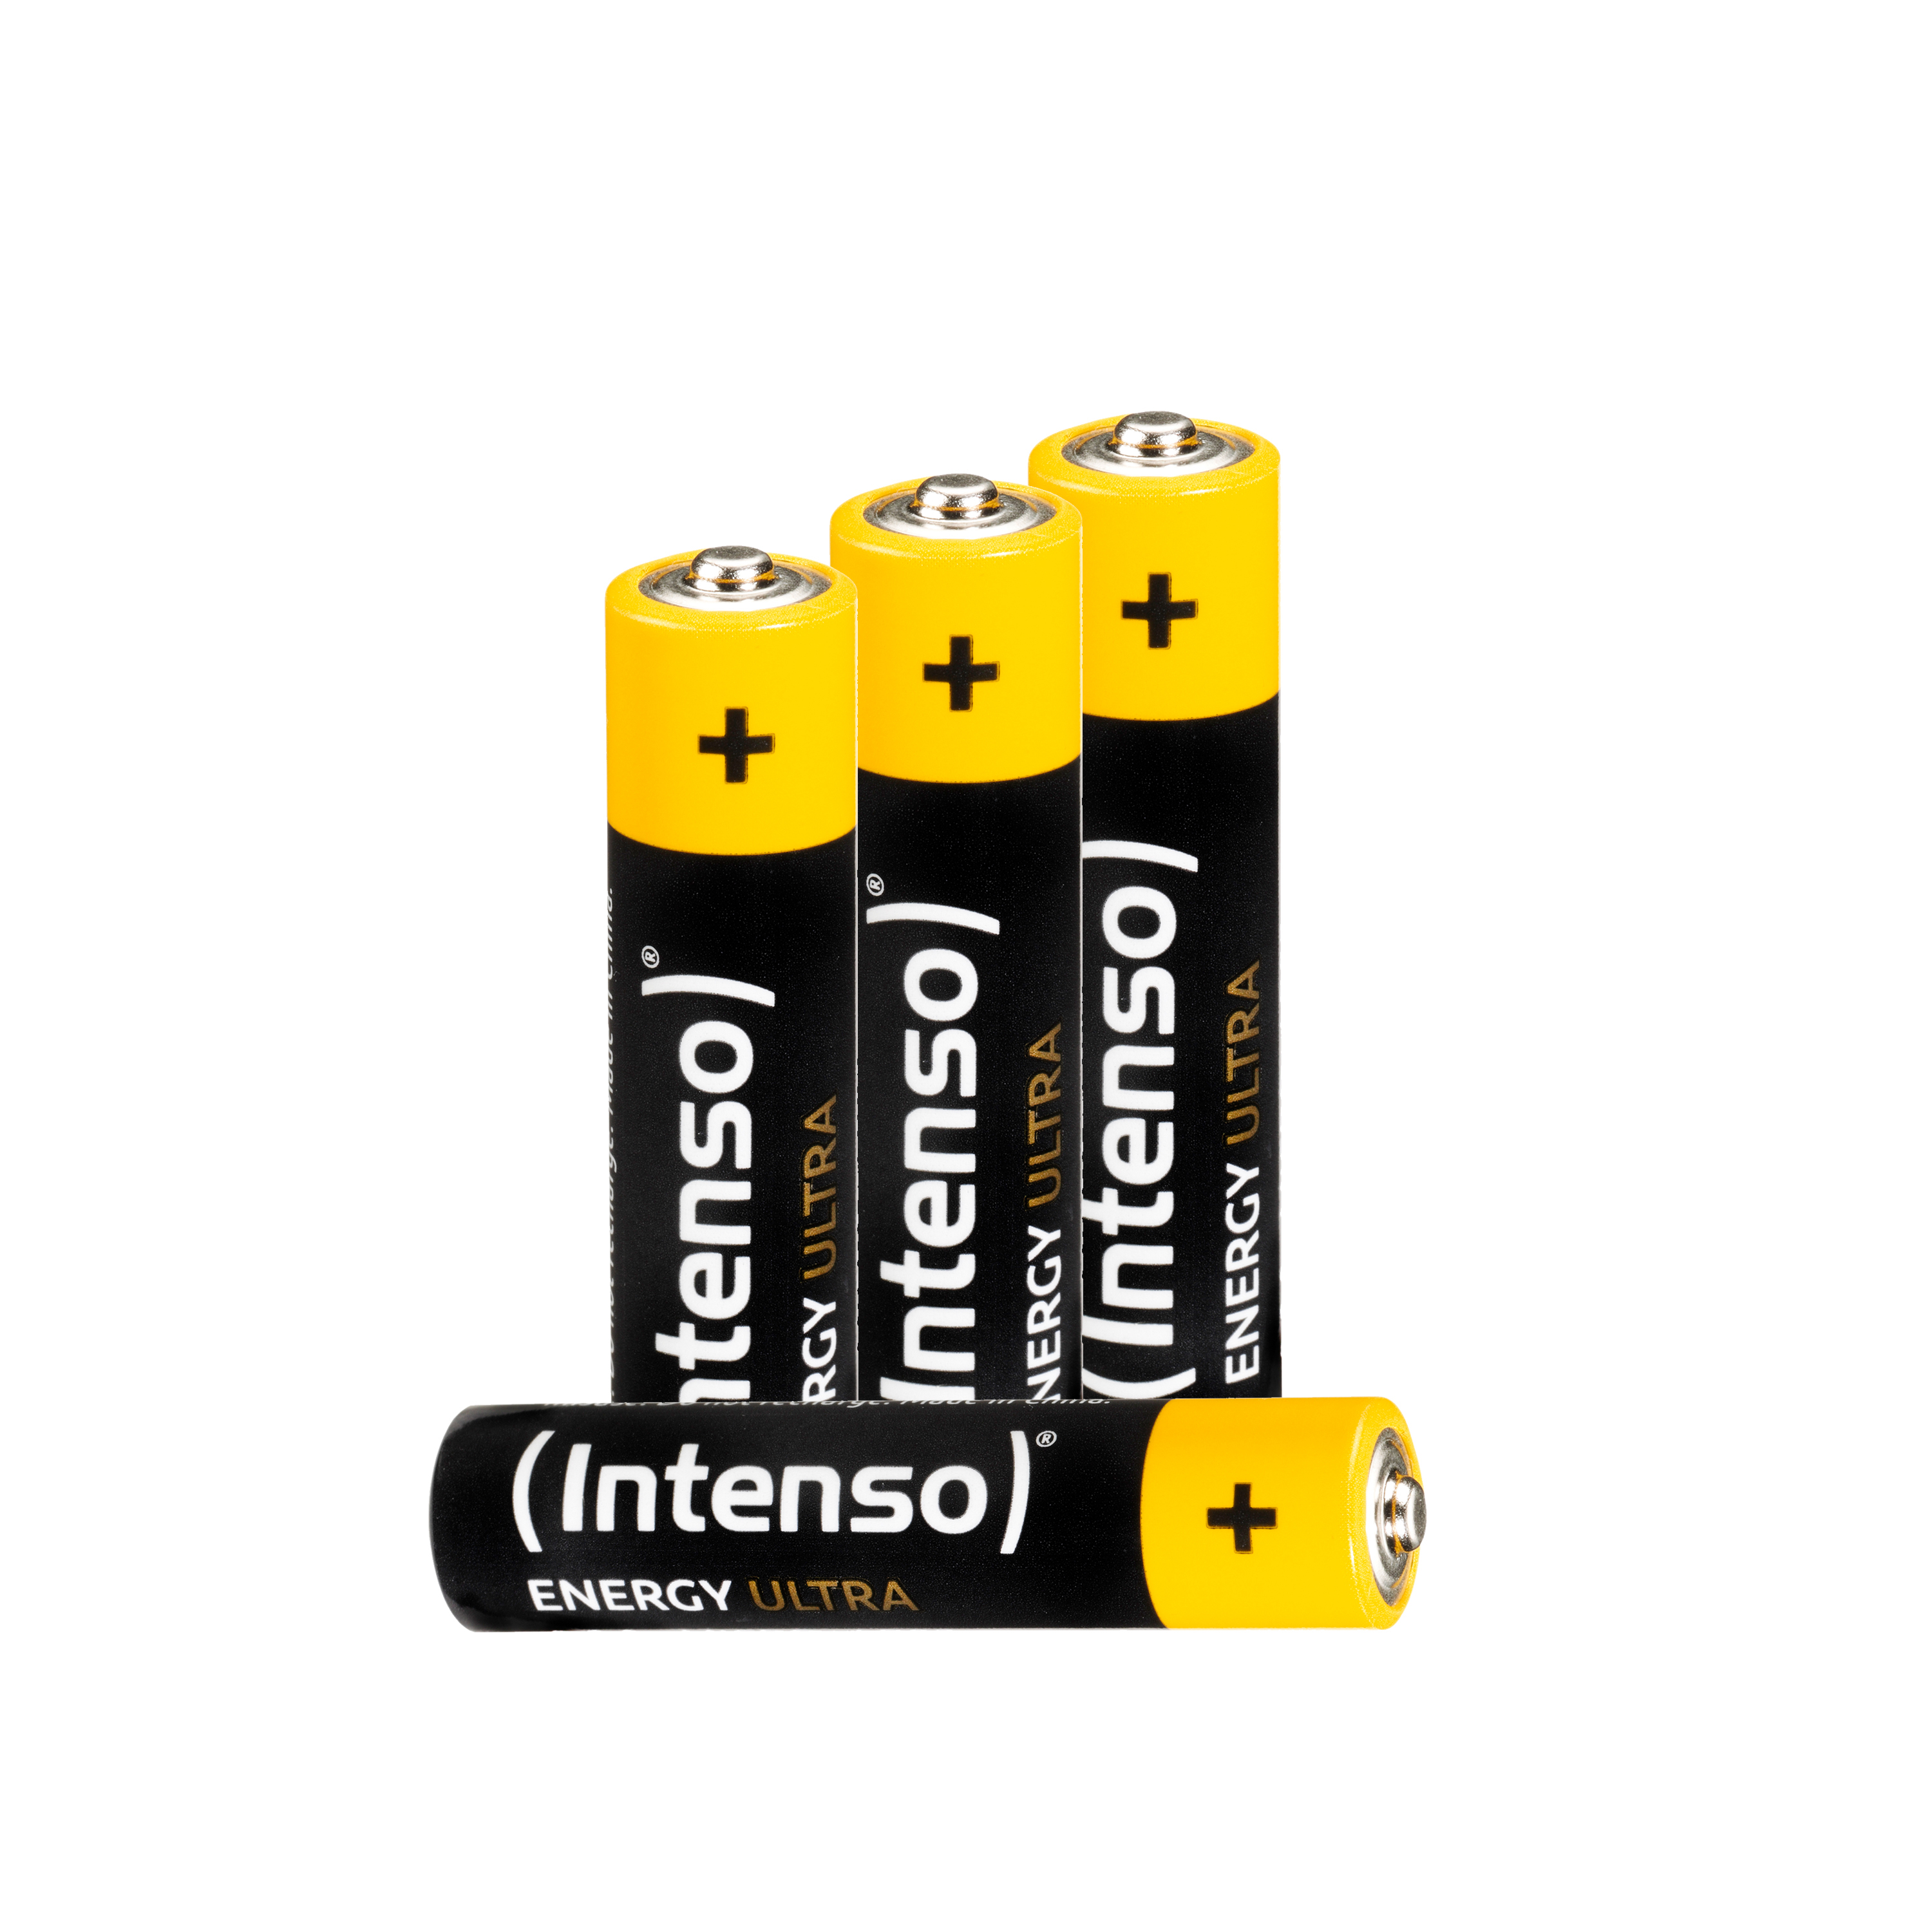 INTENSO Energy Ultra LR03, Manganese AAA, (Quecksilberfrei), Alkaline Micro Pack 4er Batterie AAA LR03